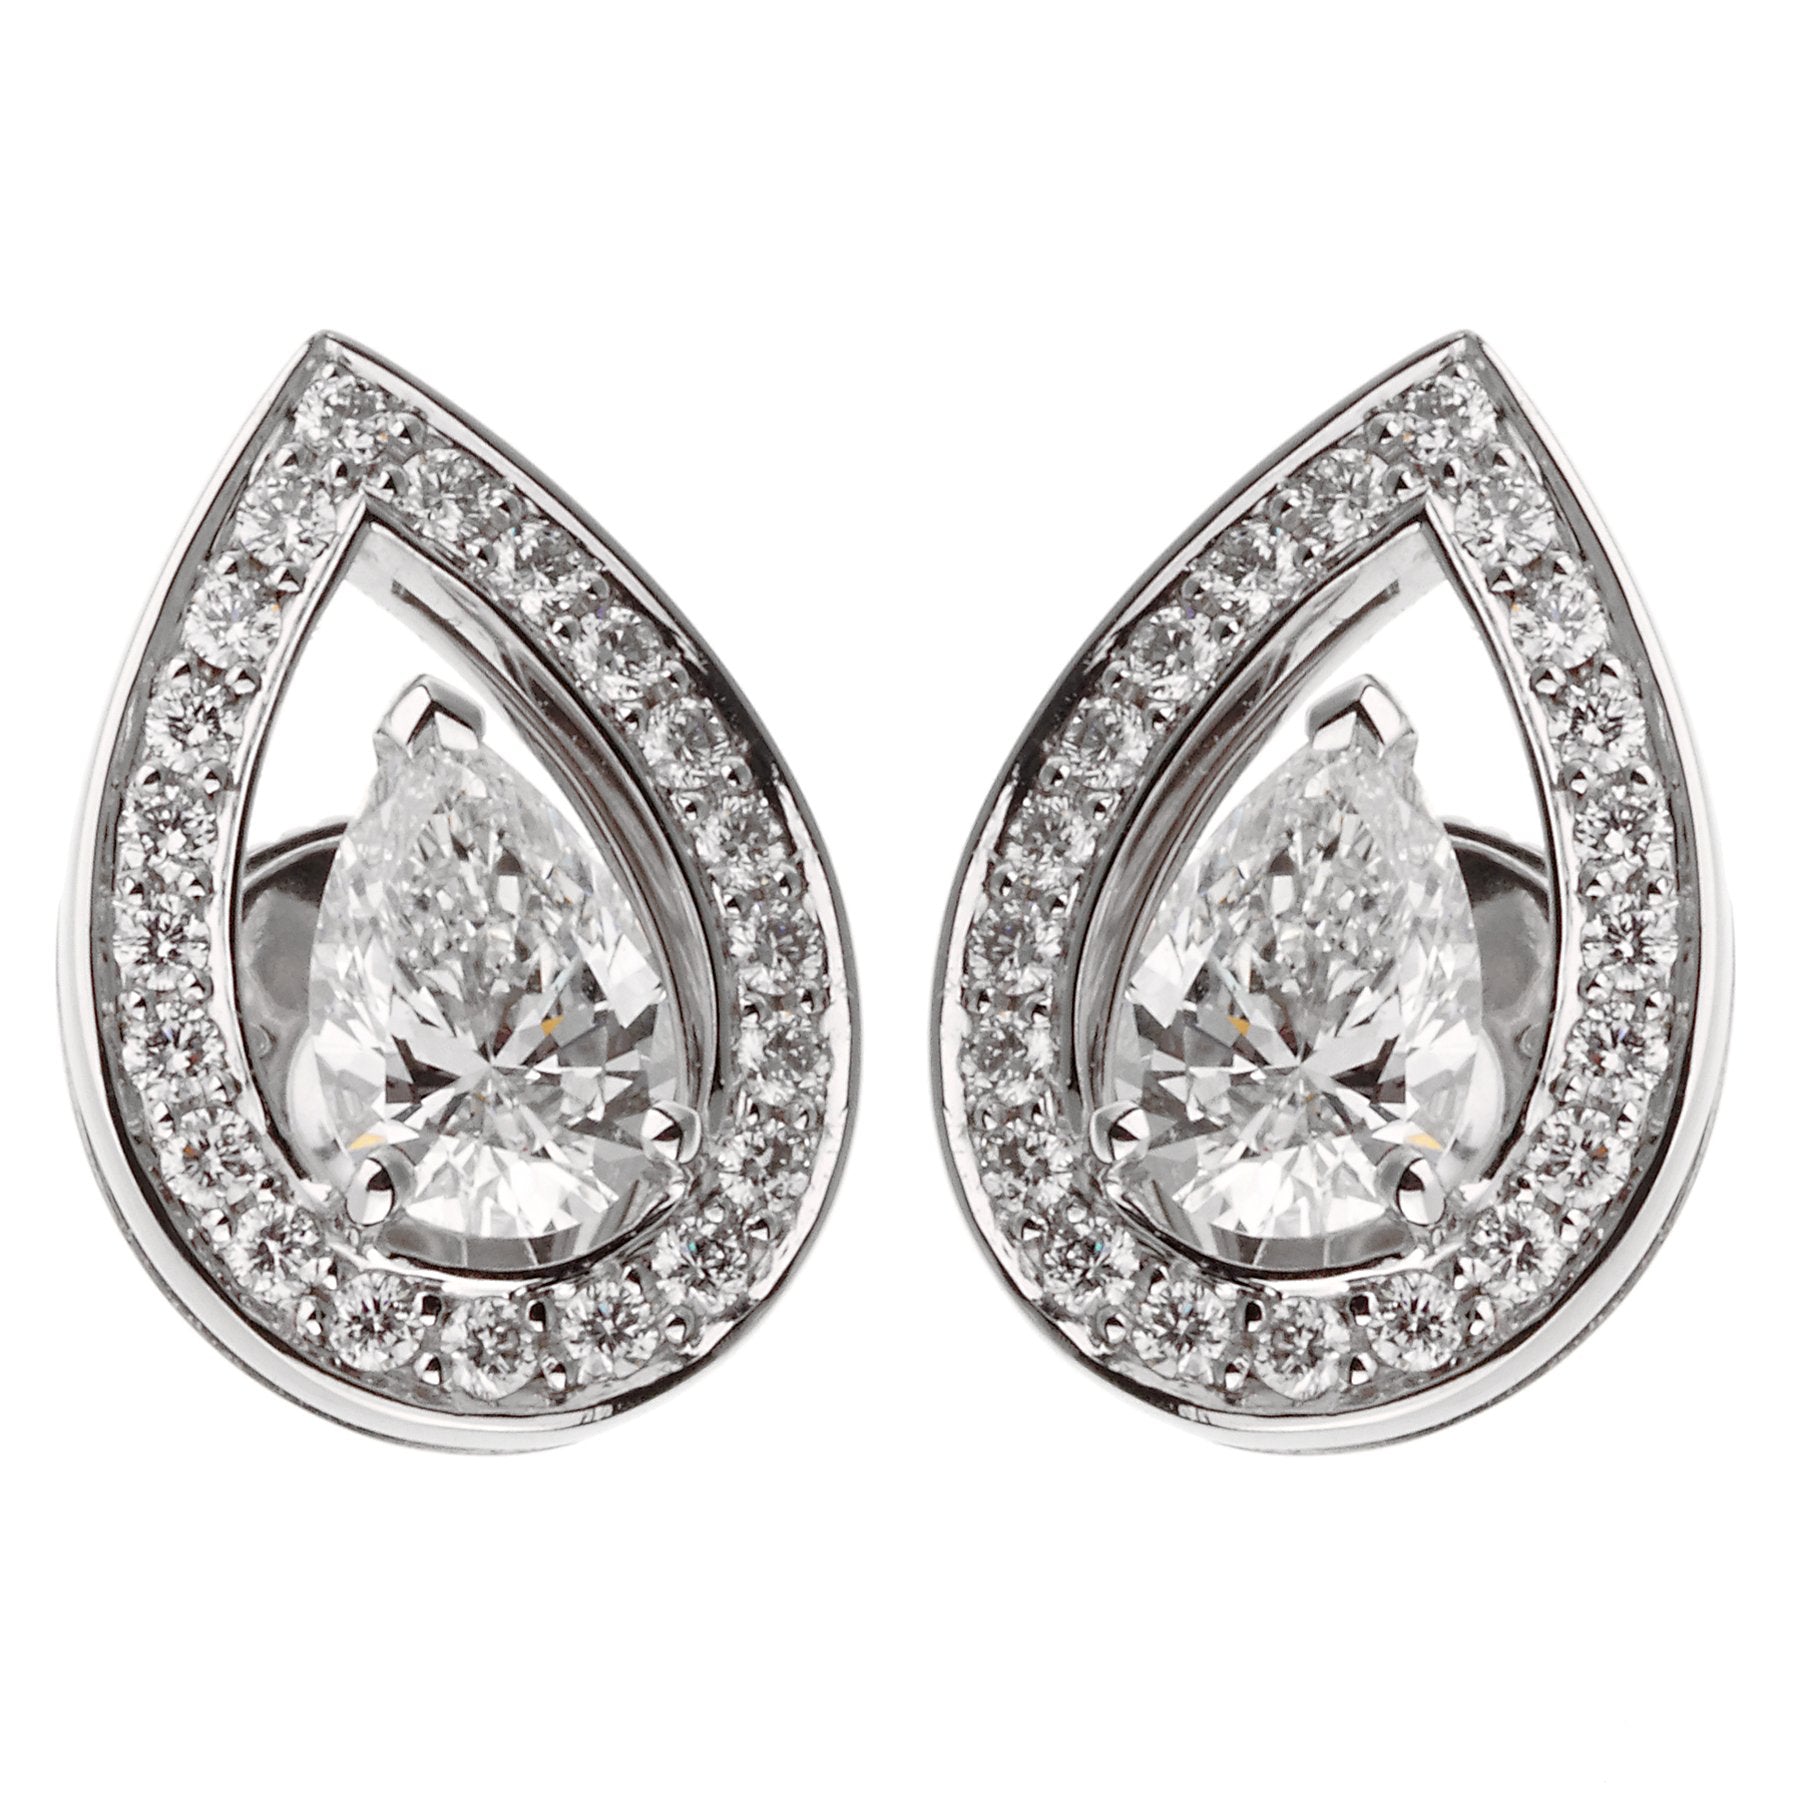 Olympe diamond stud earrings by Monsieur Paris